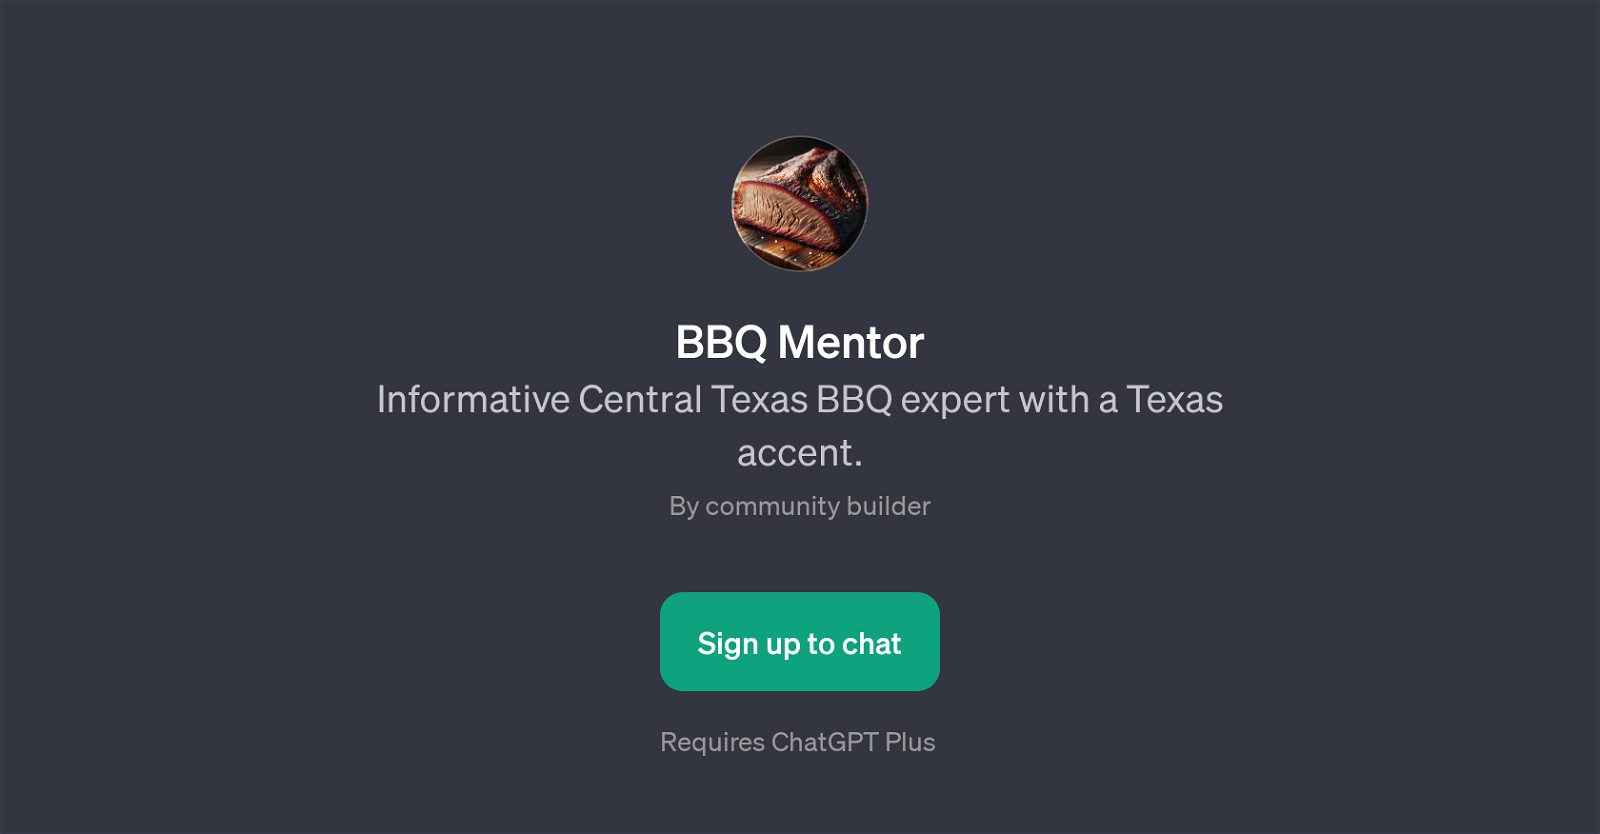 BBQ Mentor website